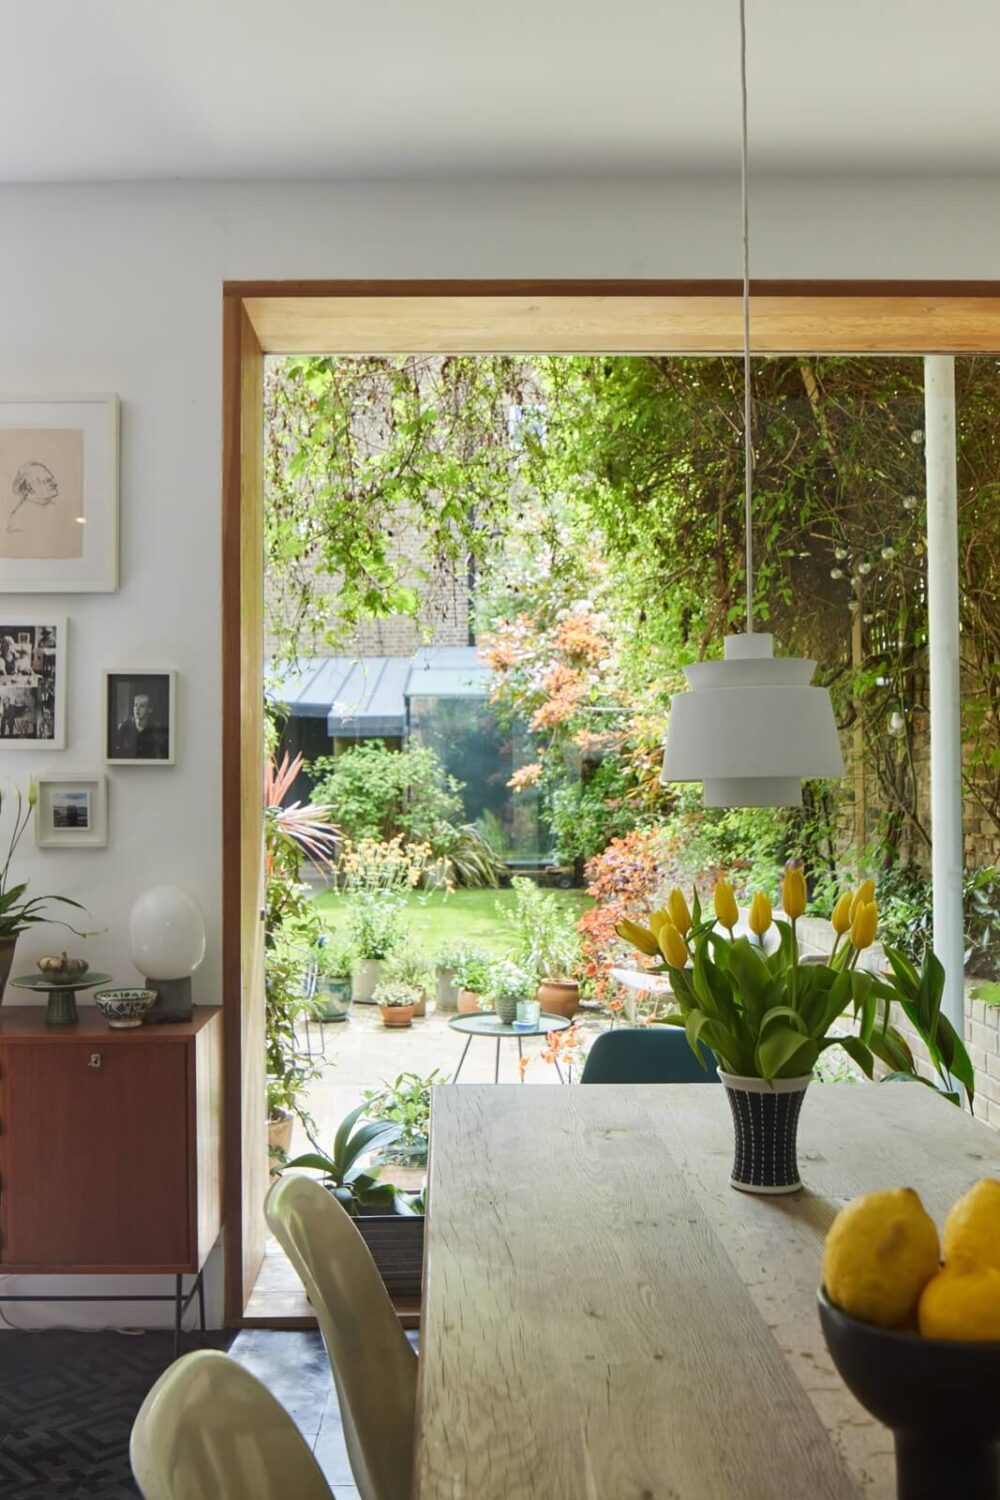 dining-room-large-window-overlooking-garden-nordroom